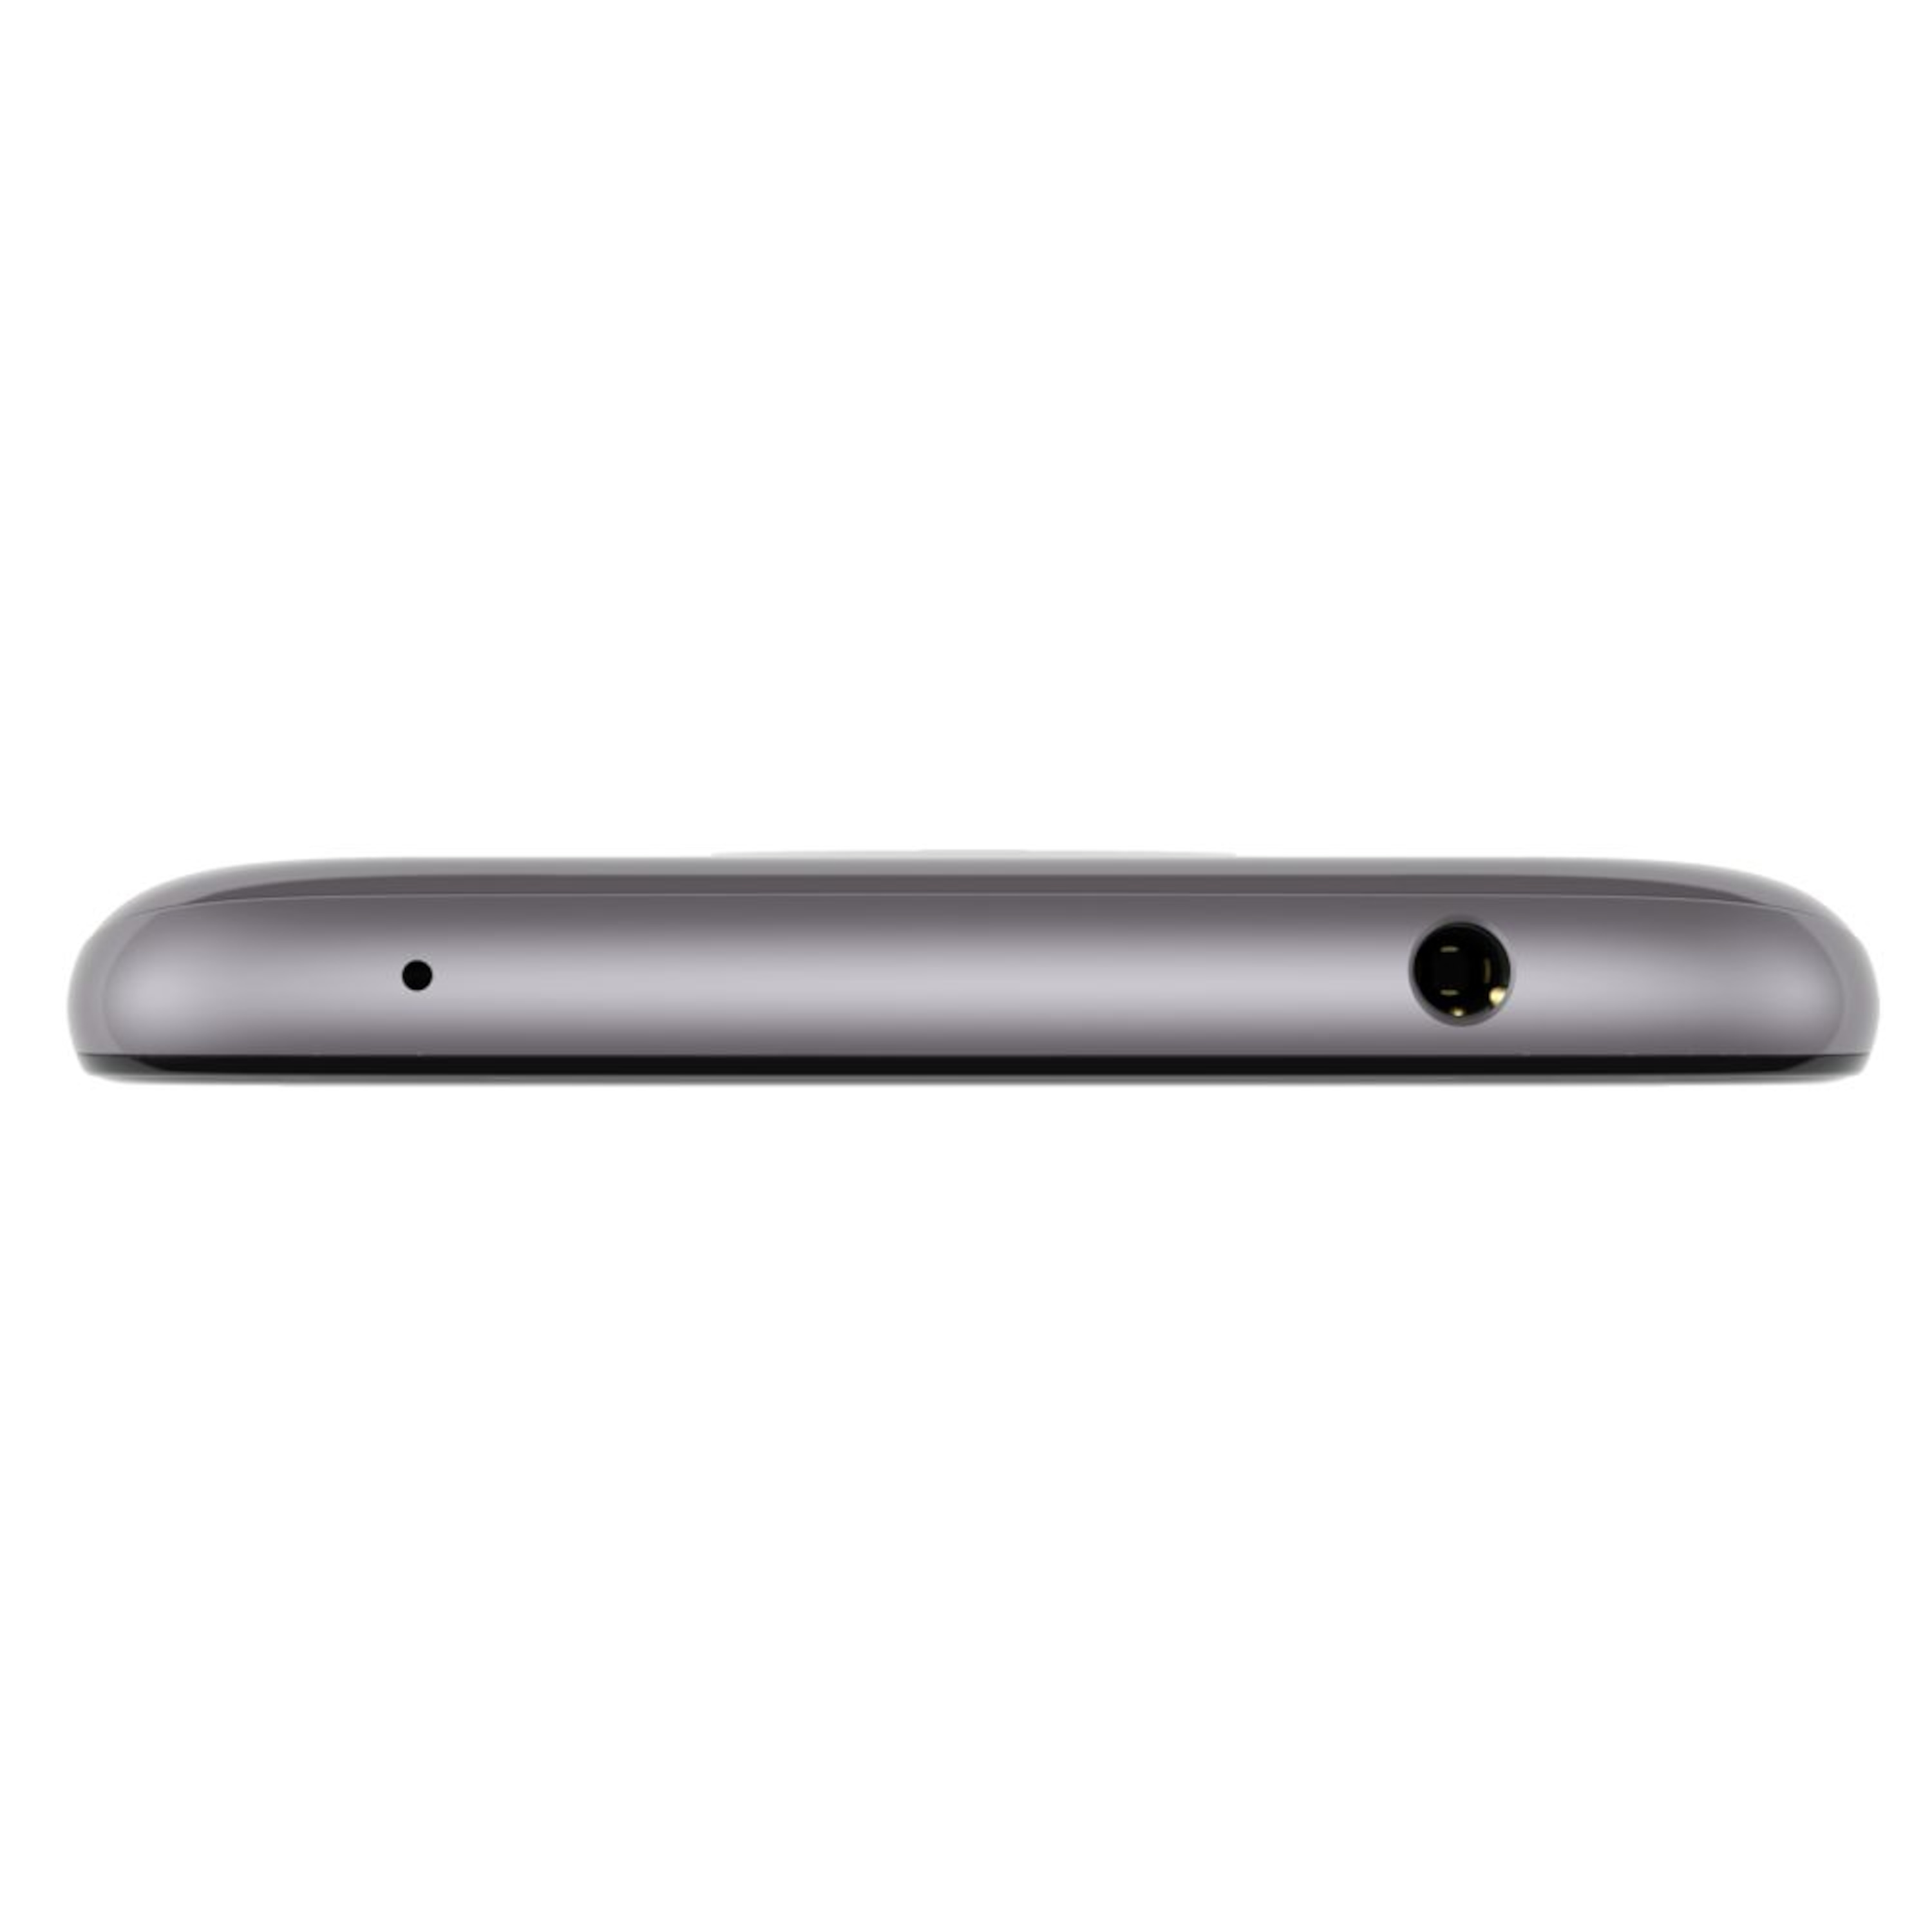 MOTOROLA Moto E5 Smartphone, 14,48 cm (5,7") HD+ Display, Android™ 8.0, 16 GB Speicher, Quad-Core-Prozessor, Dual-SIM, LTE